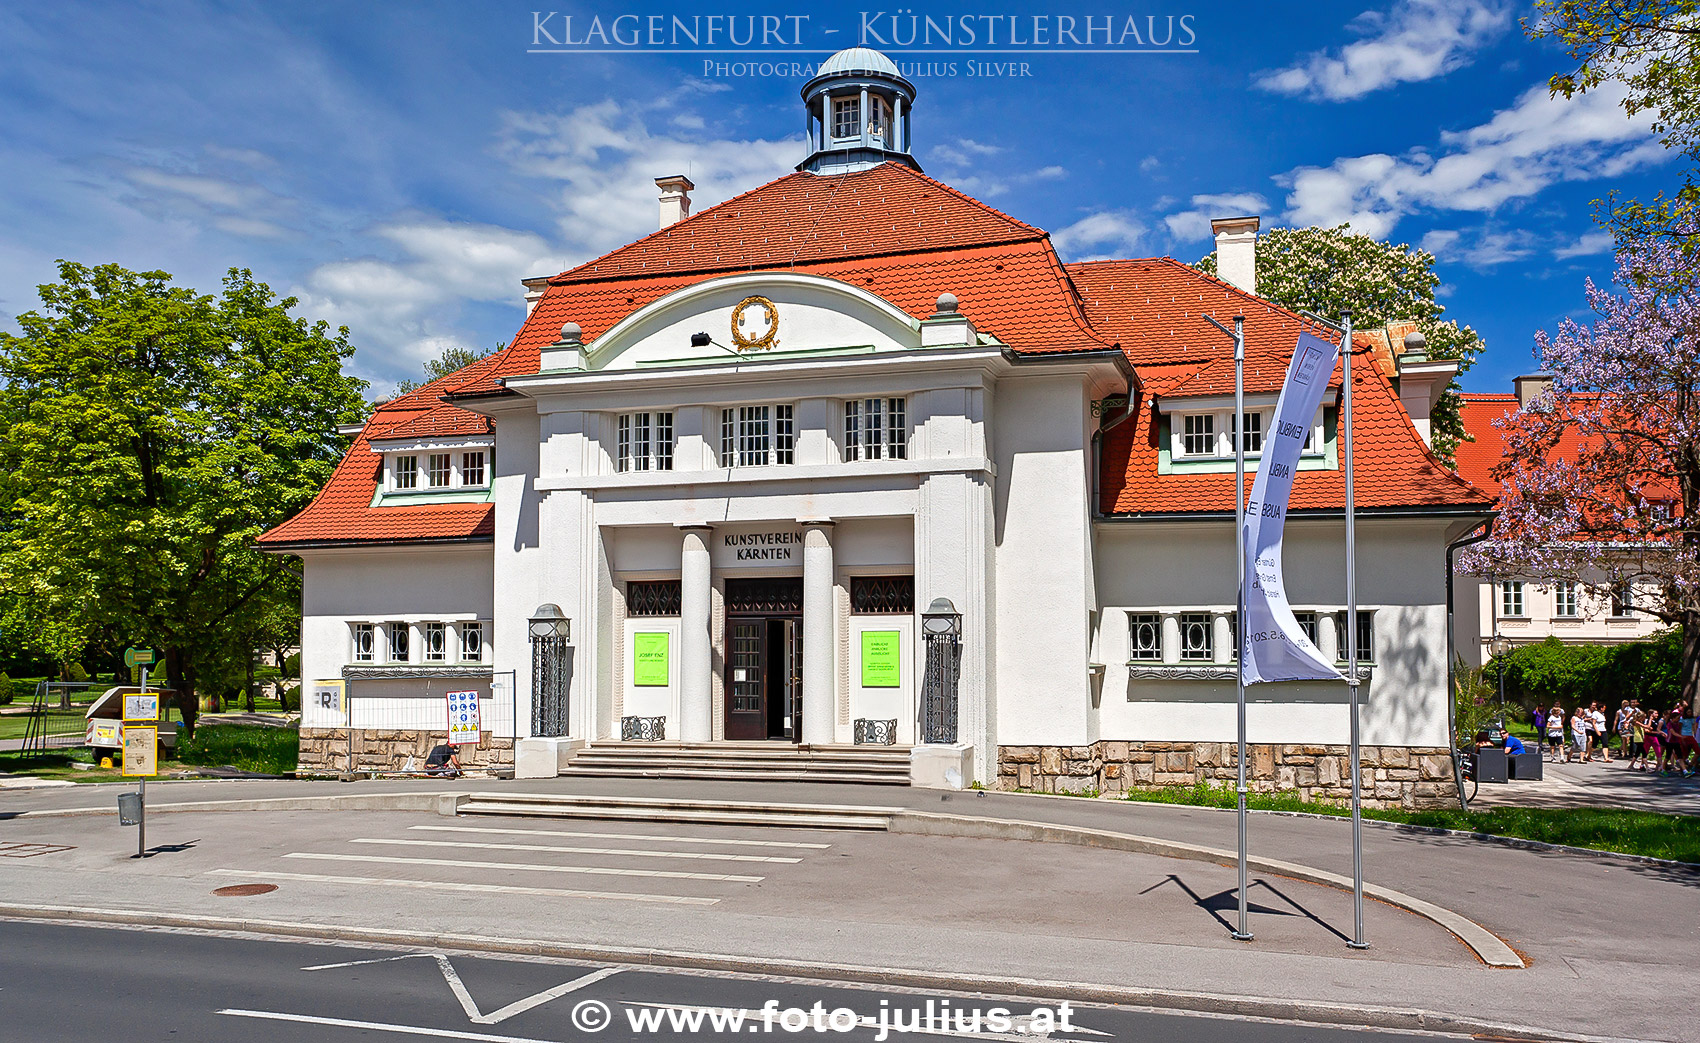 klagenfurt029a_Klagenfurt_Kunstlerhaus.jpg, 859kB